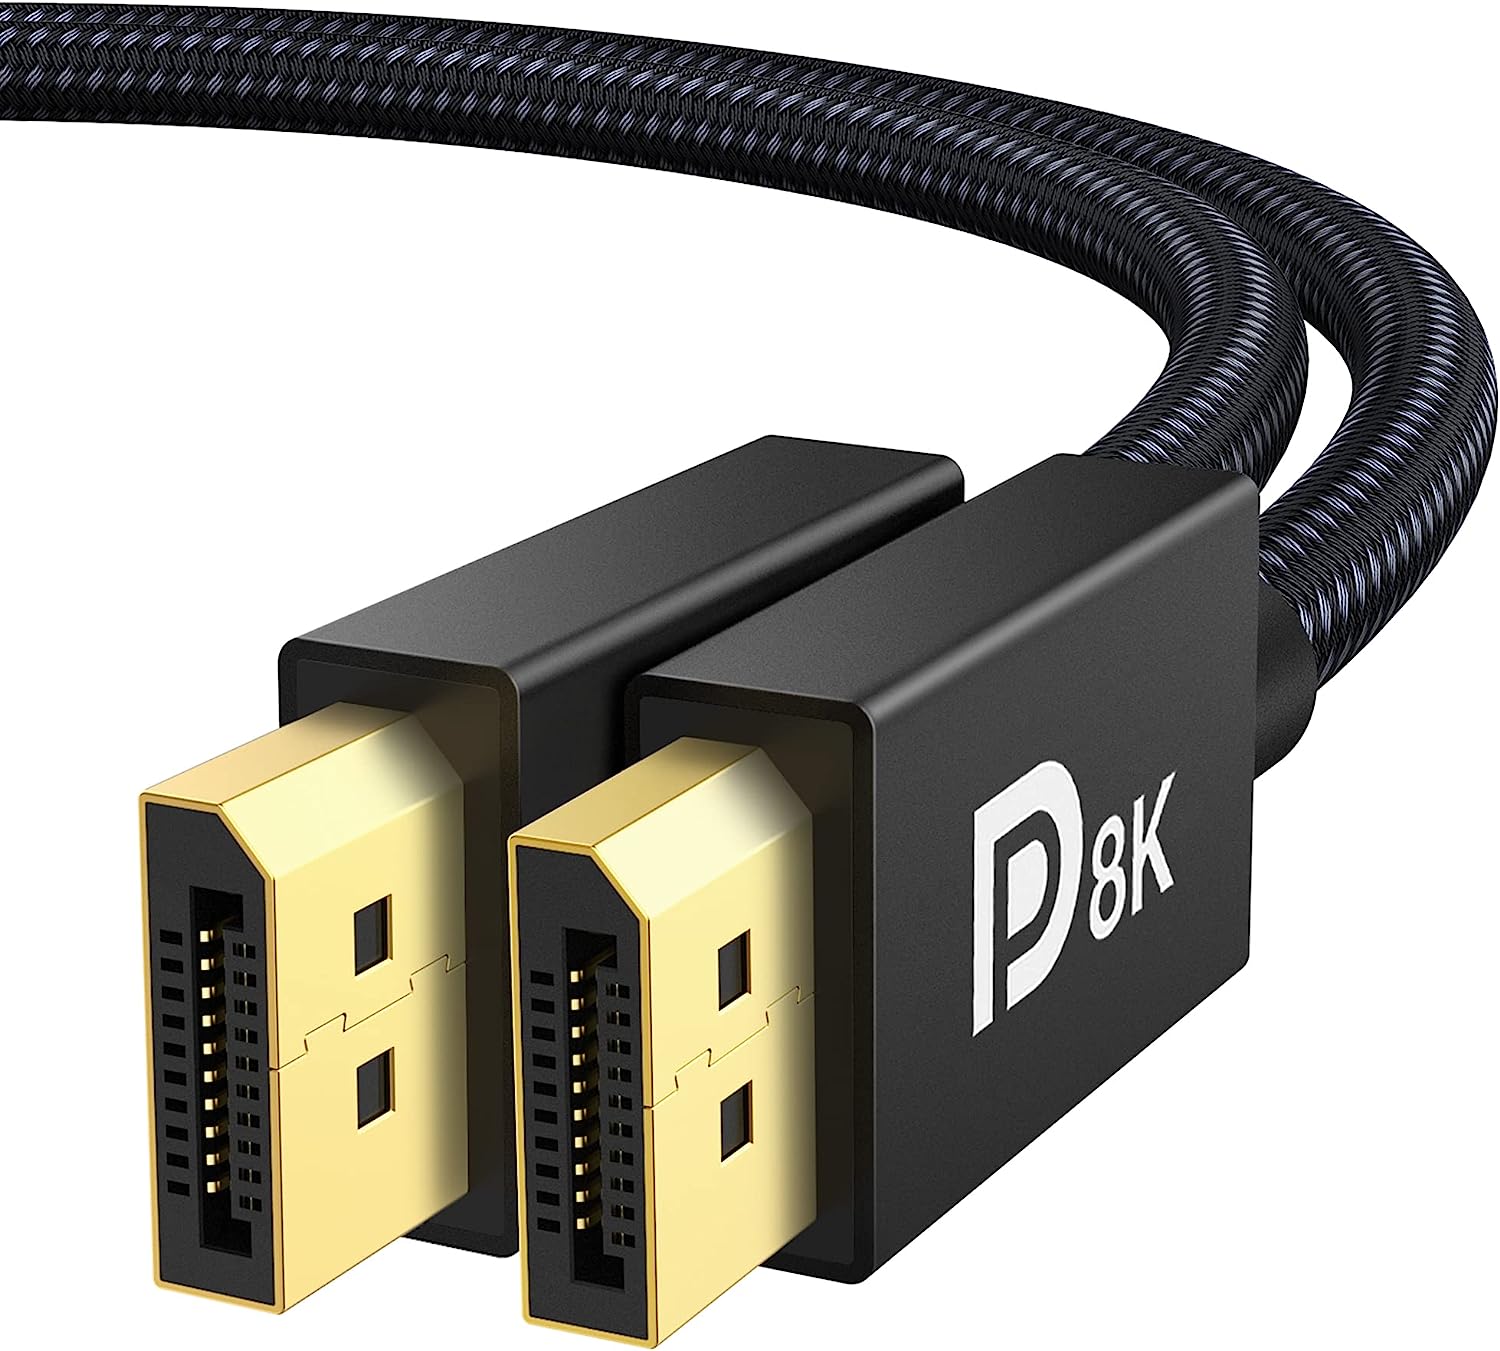 VESA Certified DisplayPort Cable 1.4, iVANKY 8K DP [...]